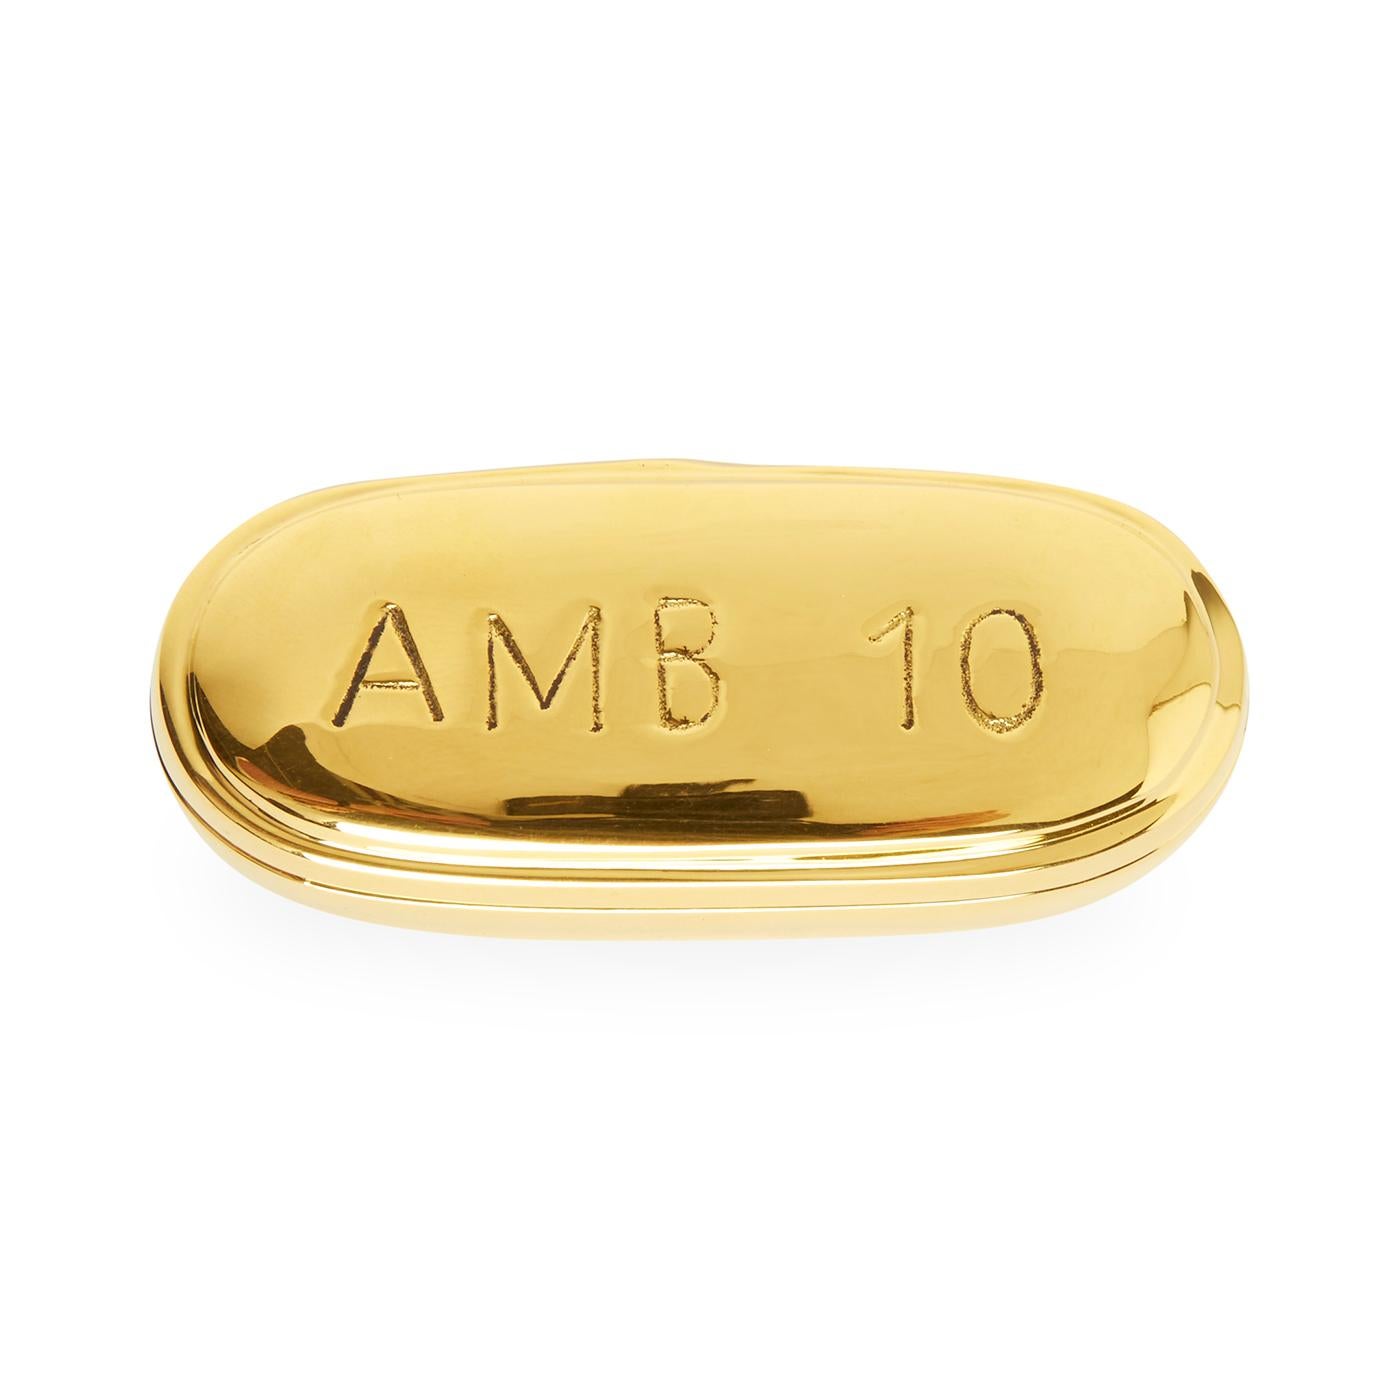 xanax brass pill box